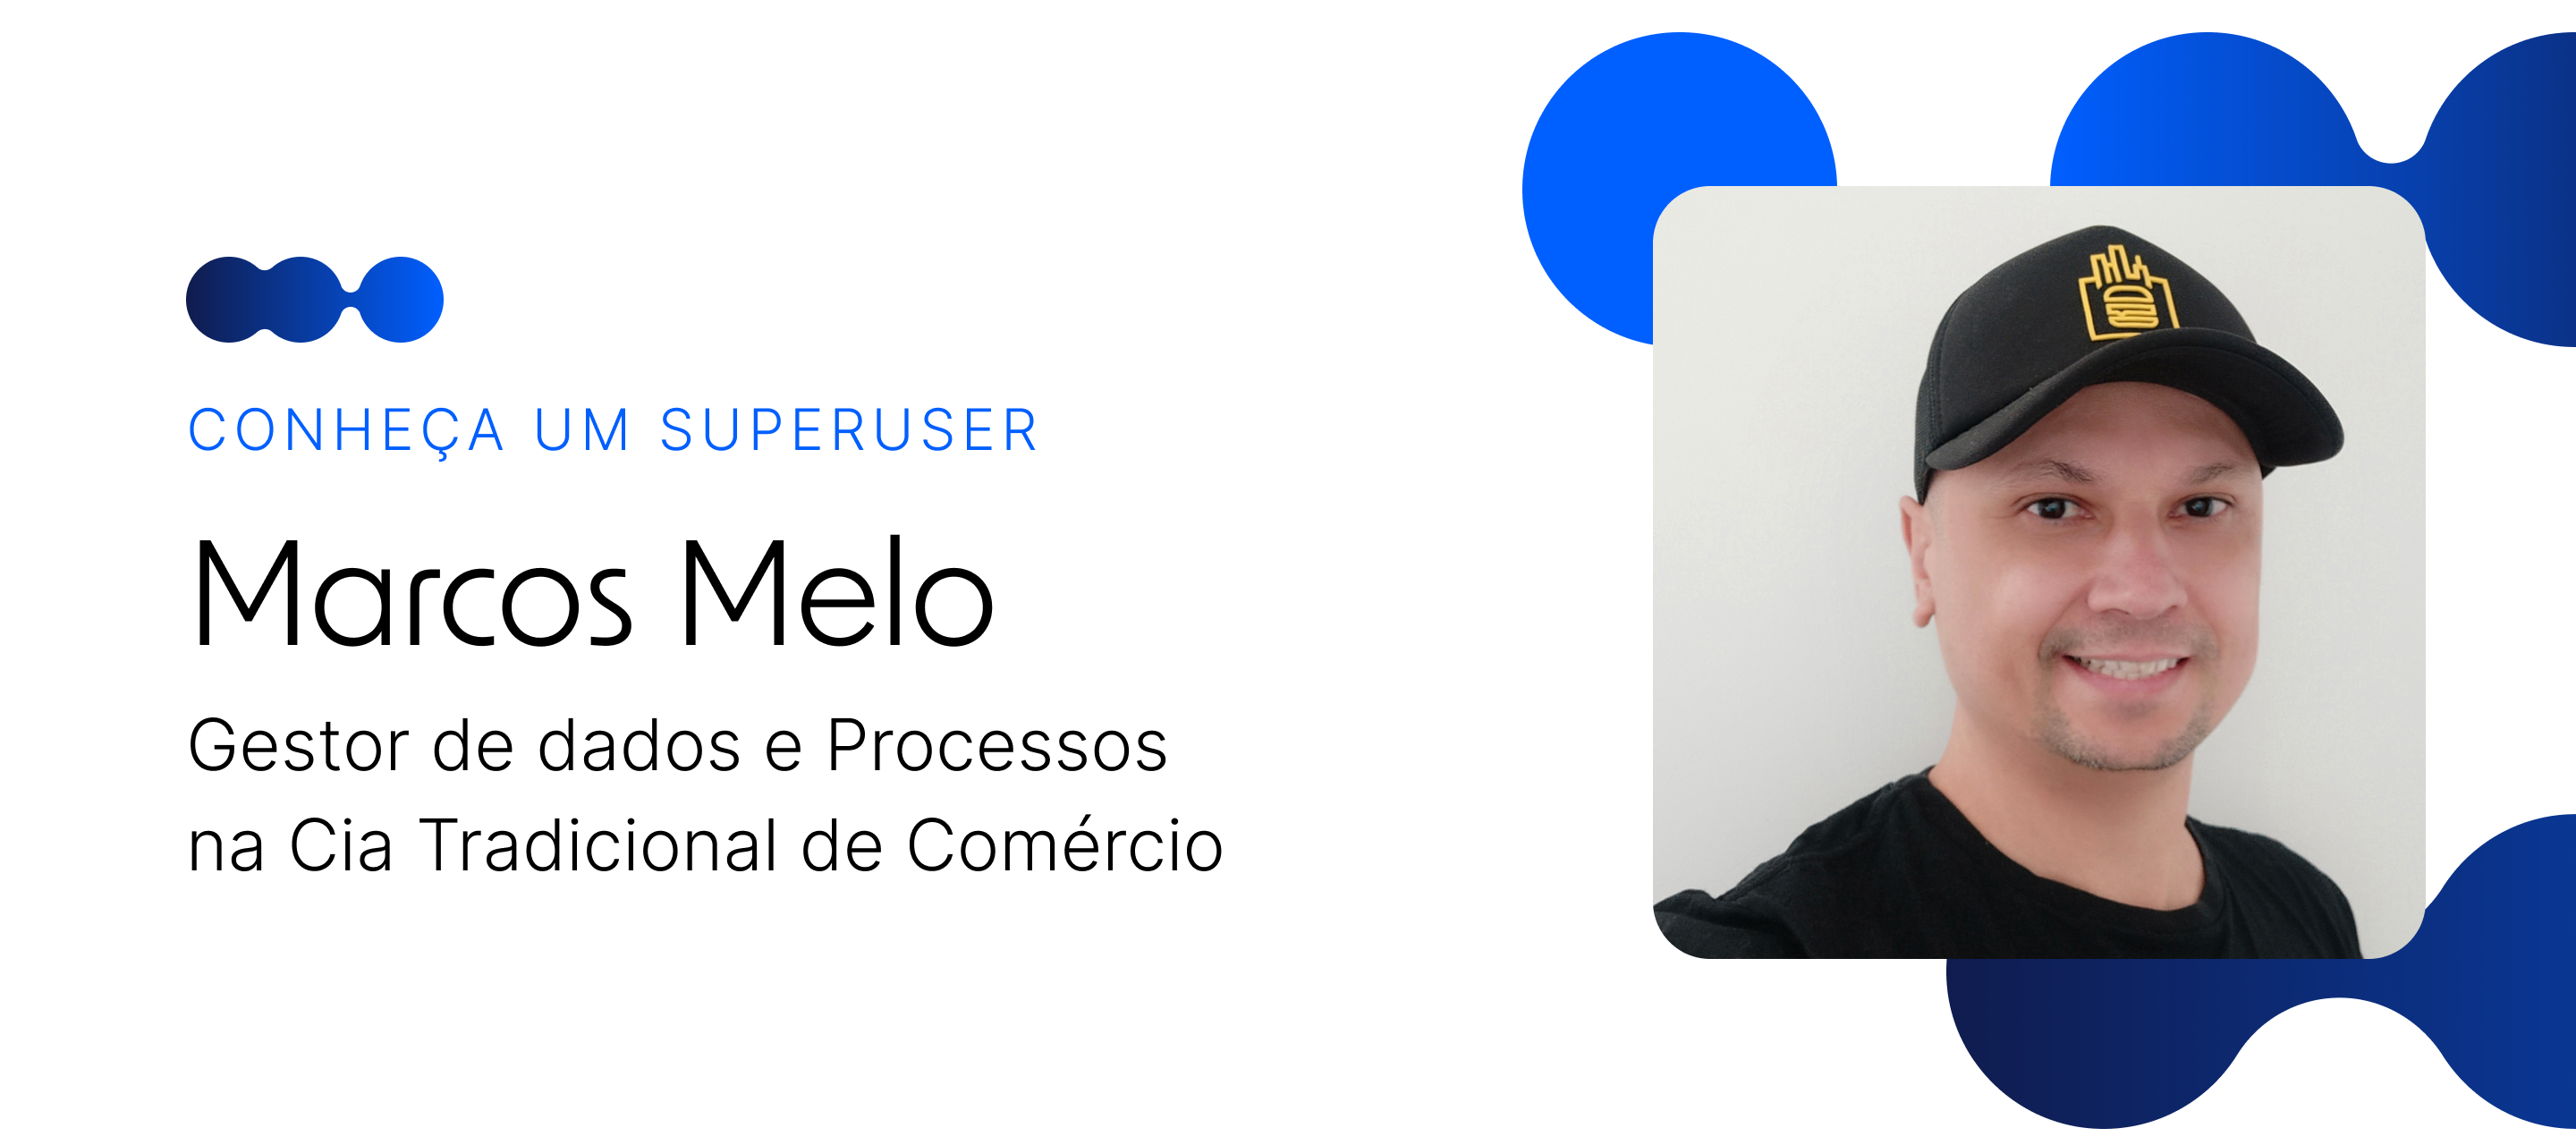 🎙 Conheça um Superuser - Marcos Melo